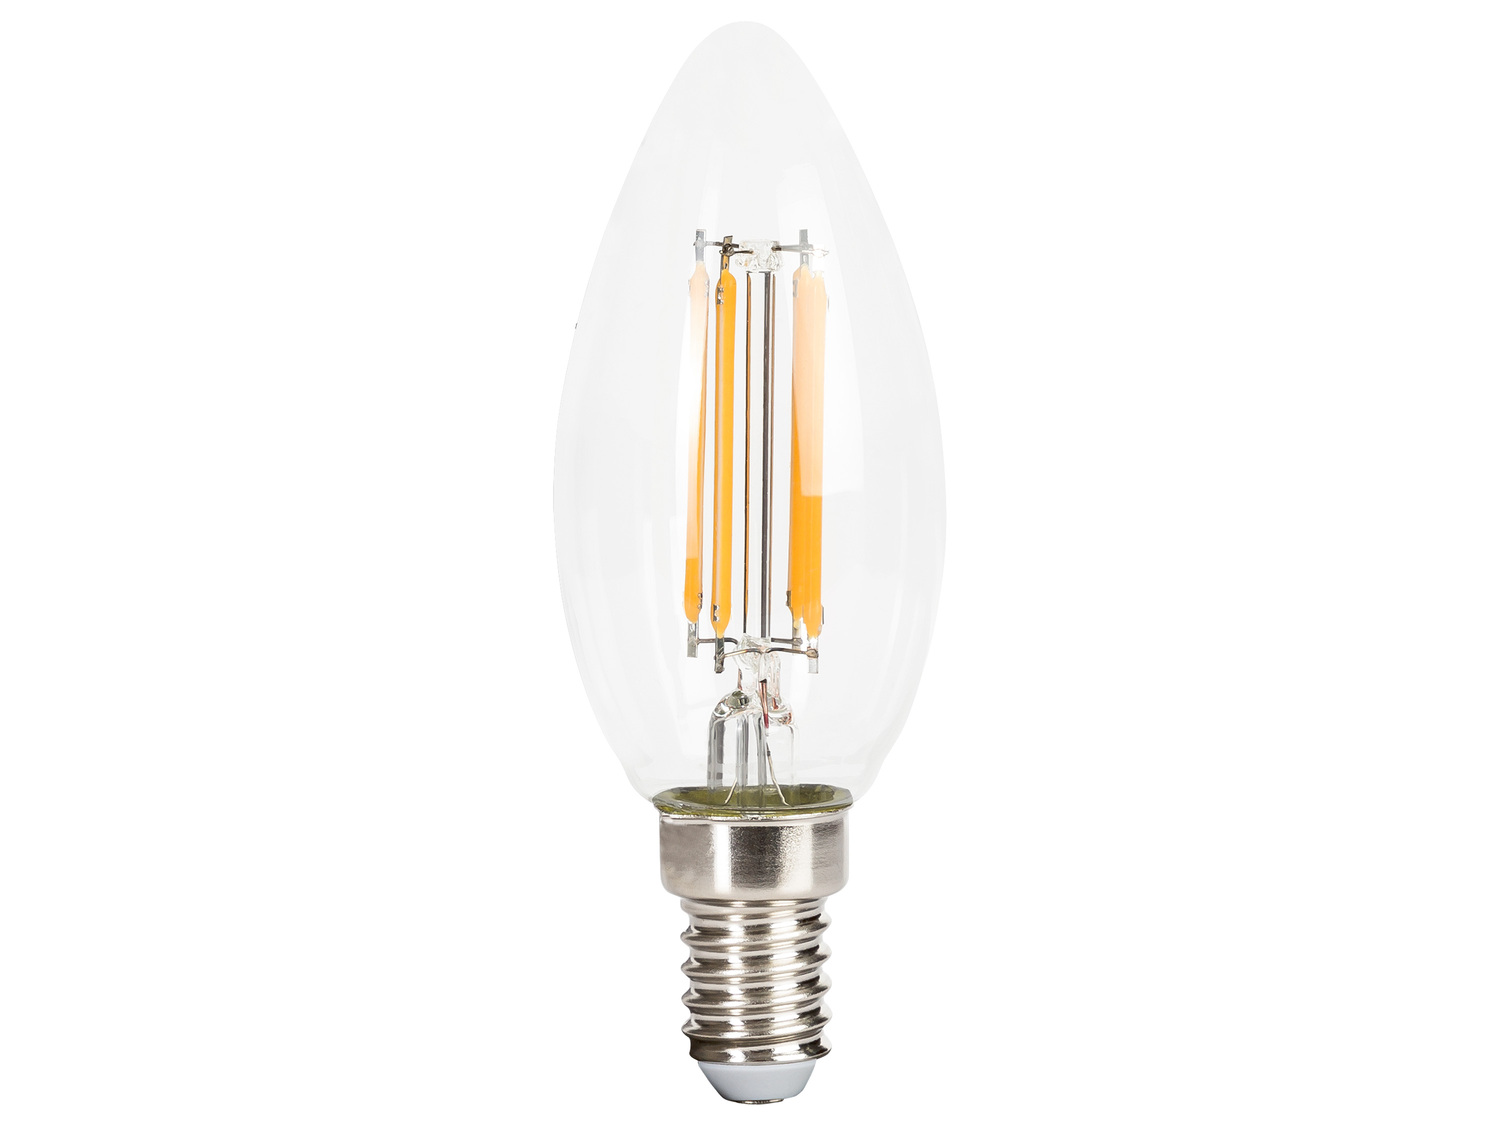 Ampoule LED à filament , le prix 1.99 € 
Au choix : 
- E14, Light 4,7 W (équivalent ...